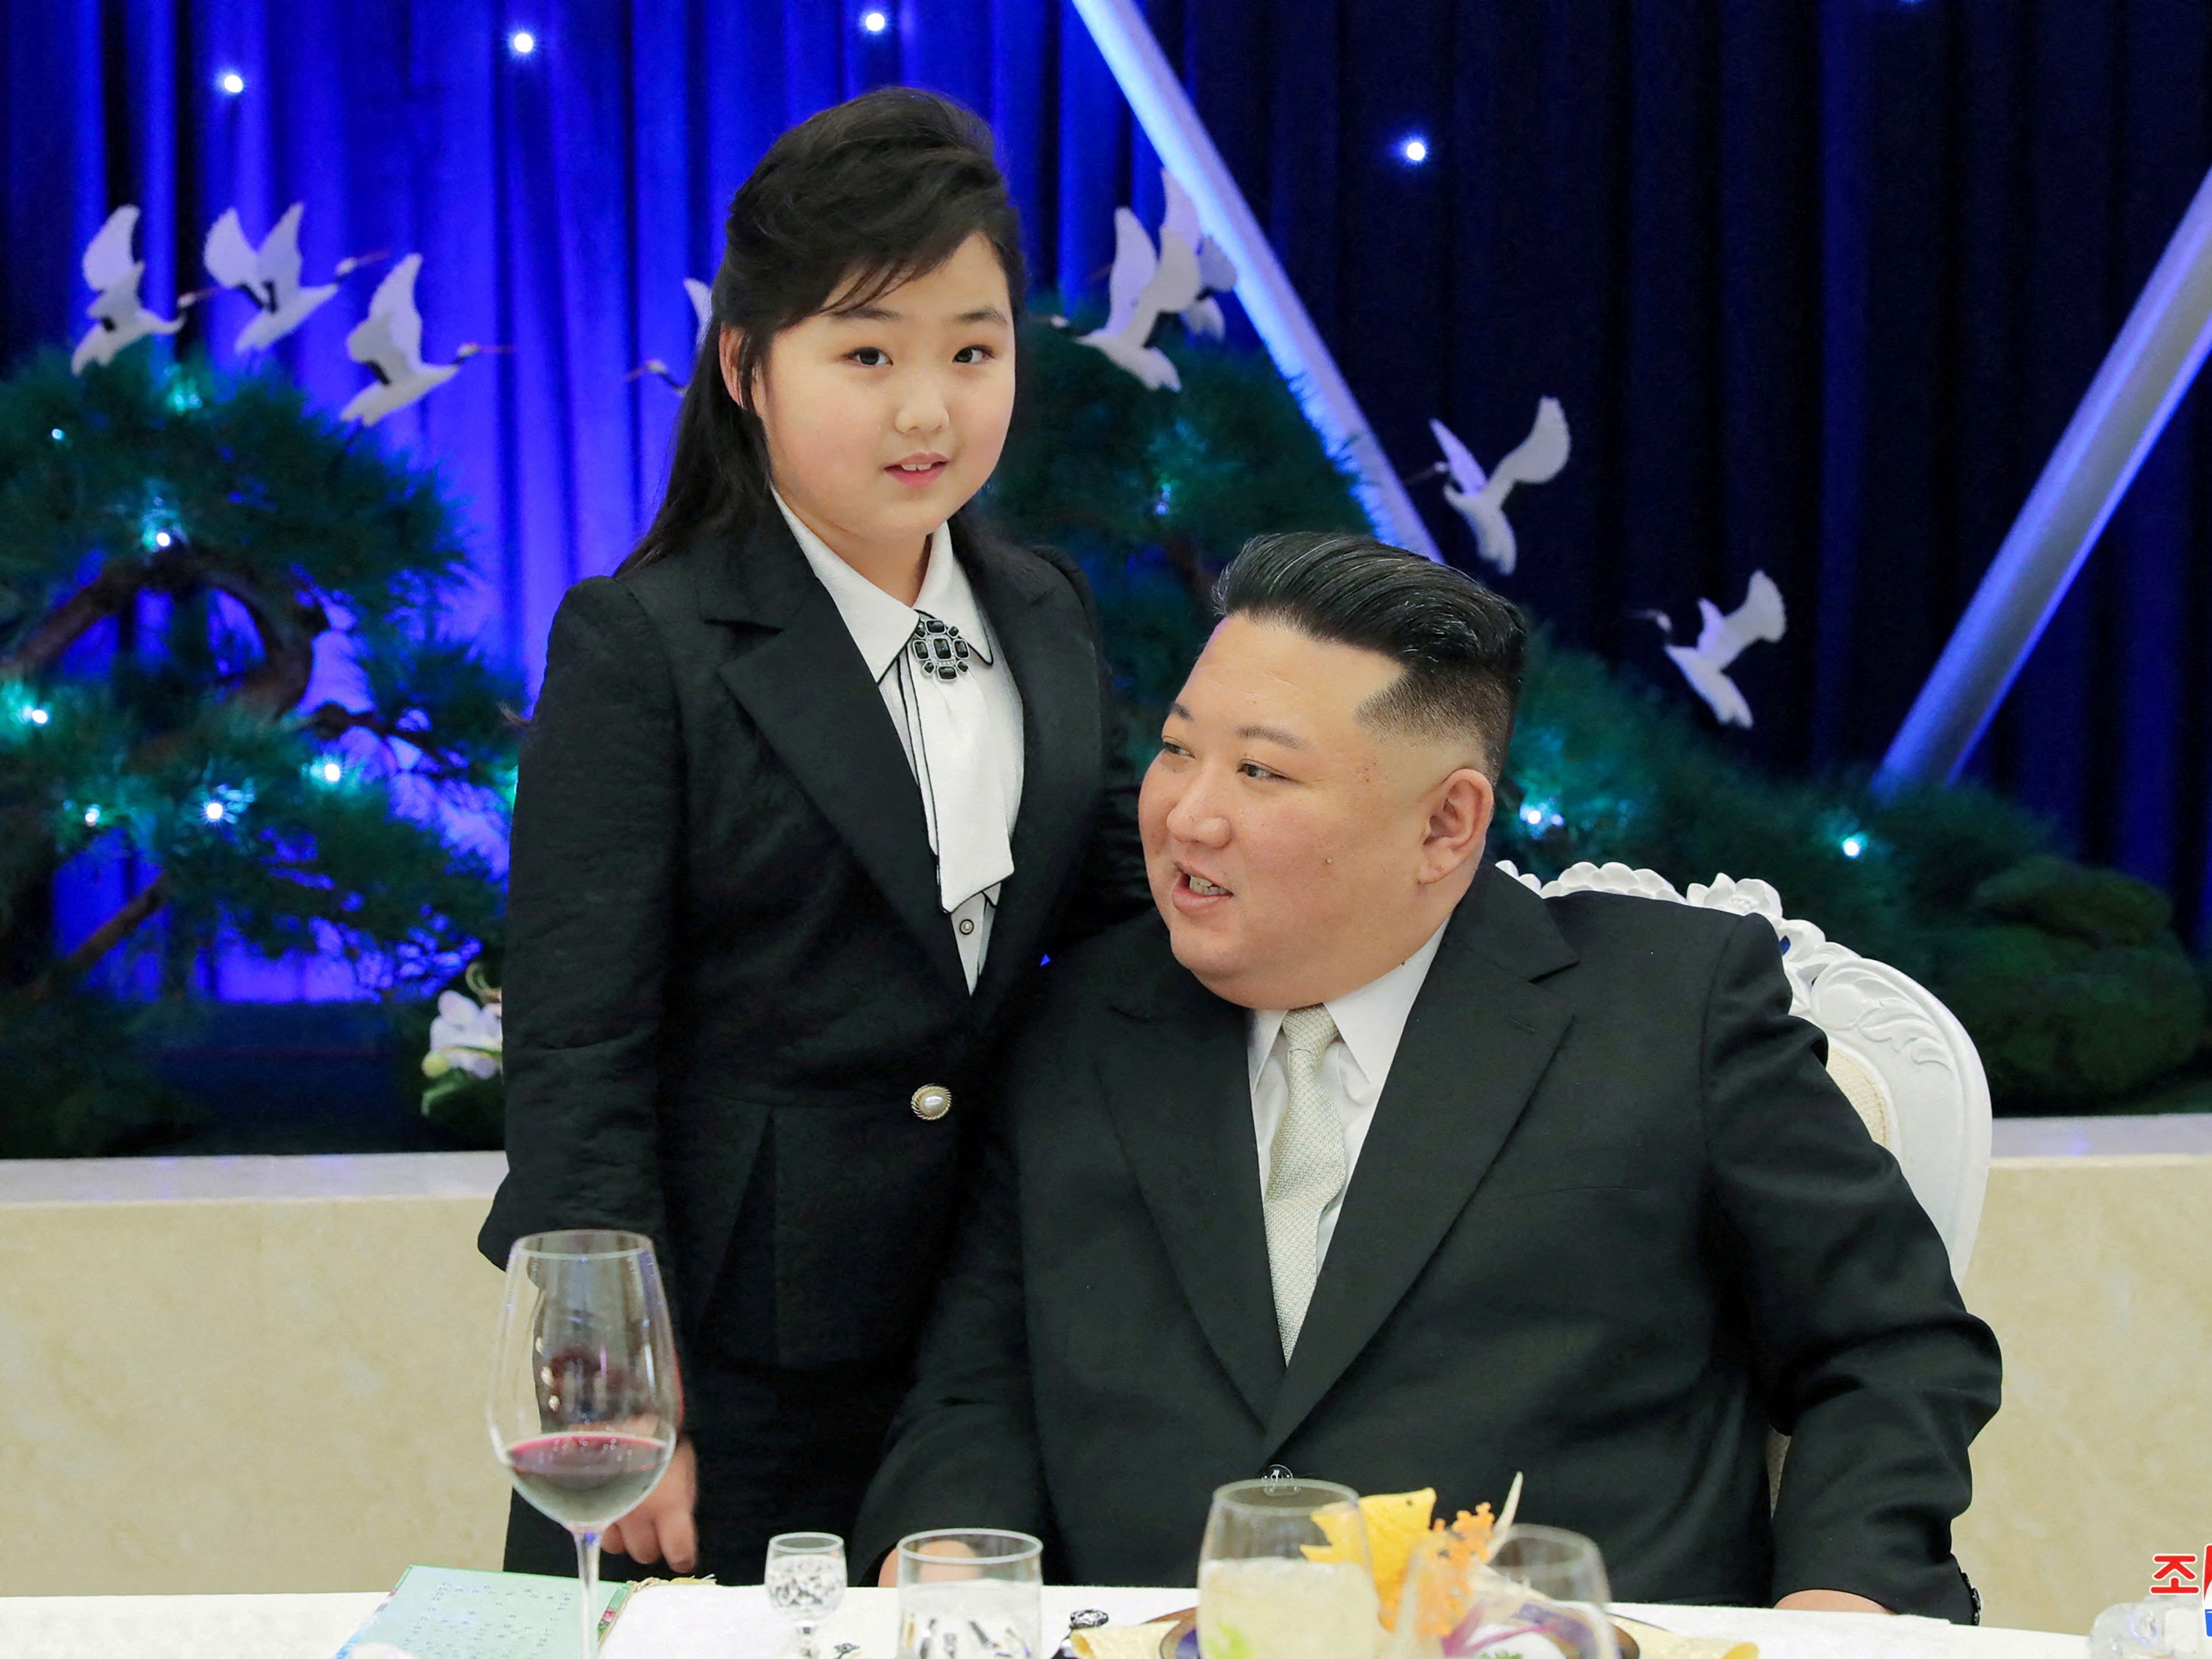 Der nordkoreanische Führer Kim Jong Un spricht mit seiner Tochter Kim Ju Ae bei einem Bankett zur Feier des 75. Jahrestages der Koreanischen Volksarmee am folgenden Tag in Pjöngjang, Nordkorea, am 7. Februar 2023